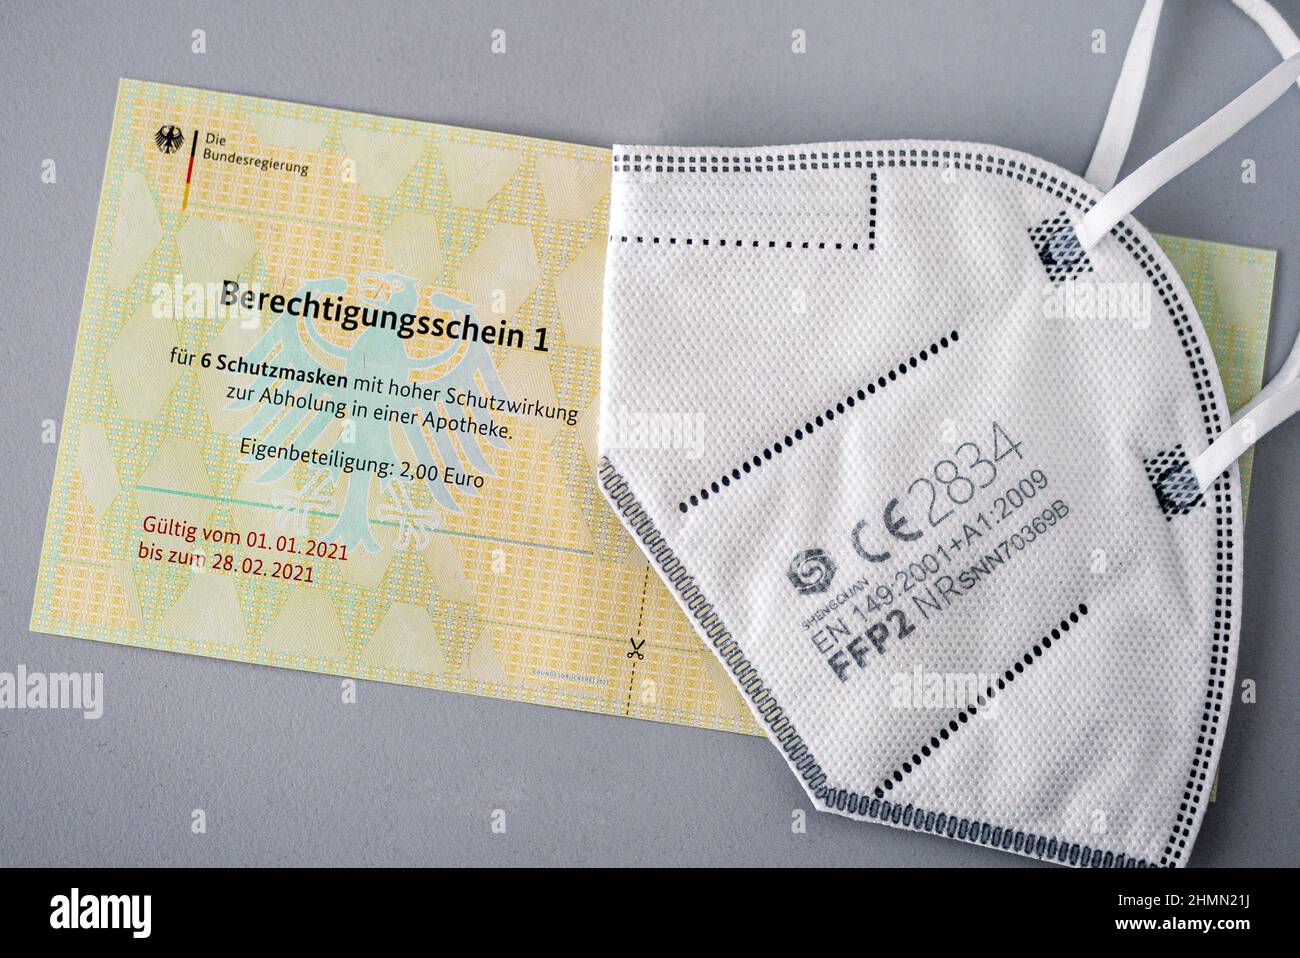 Certificados de autorización para FFP2 máscaras del Gobierno Federal de Alemania, Alemania Foto de stock